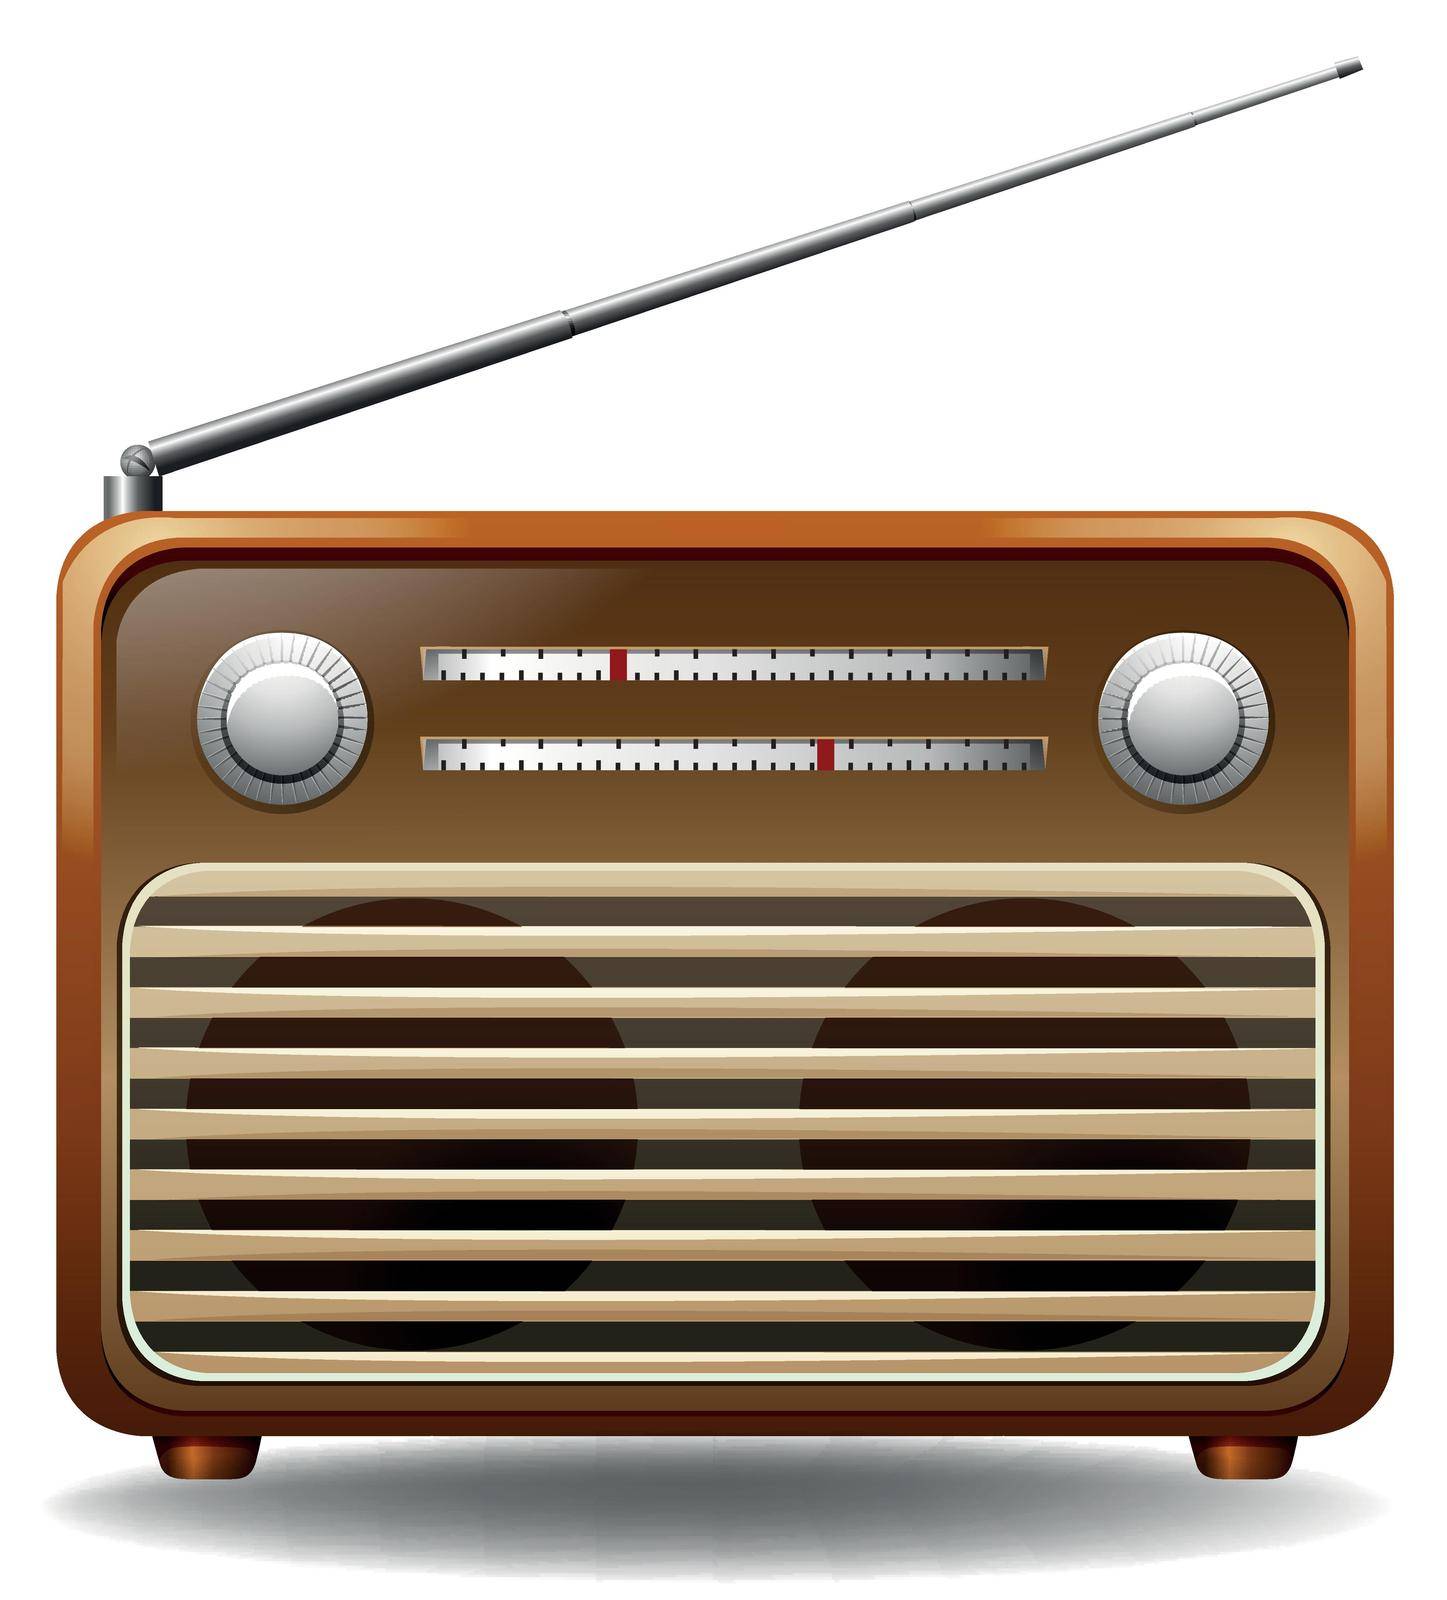 Retro radio on a white background